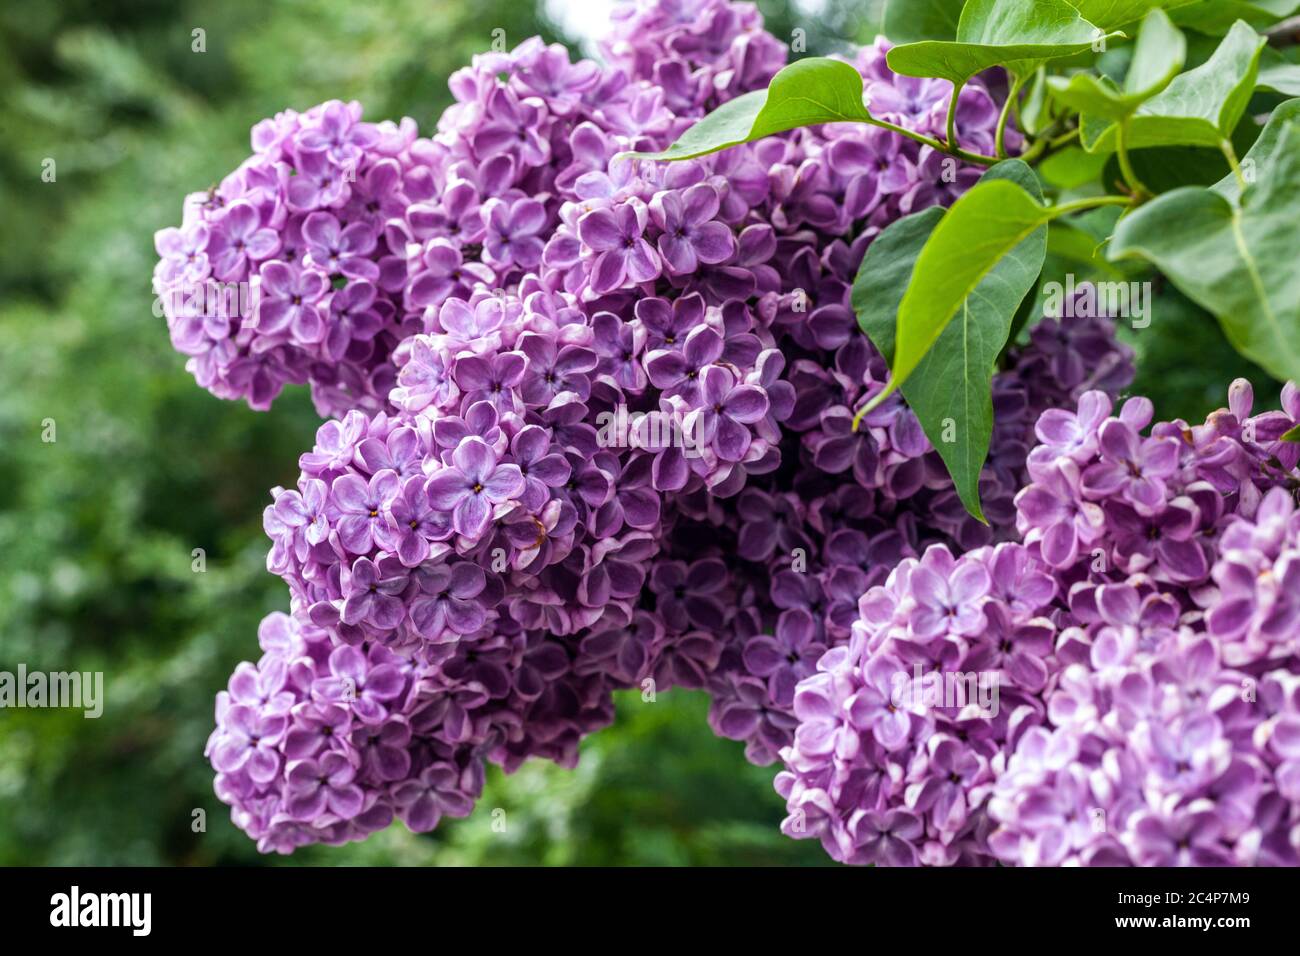 Gemeine Fliederblume syringa vulgaris lila Flieder Gartenquelle  Stockfotografie - Alamy